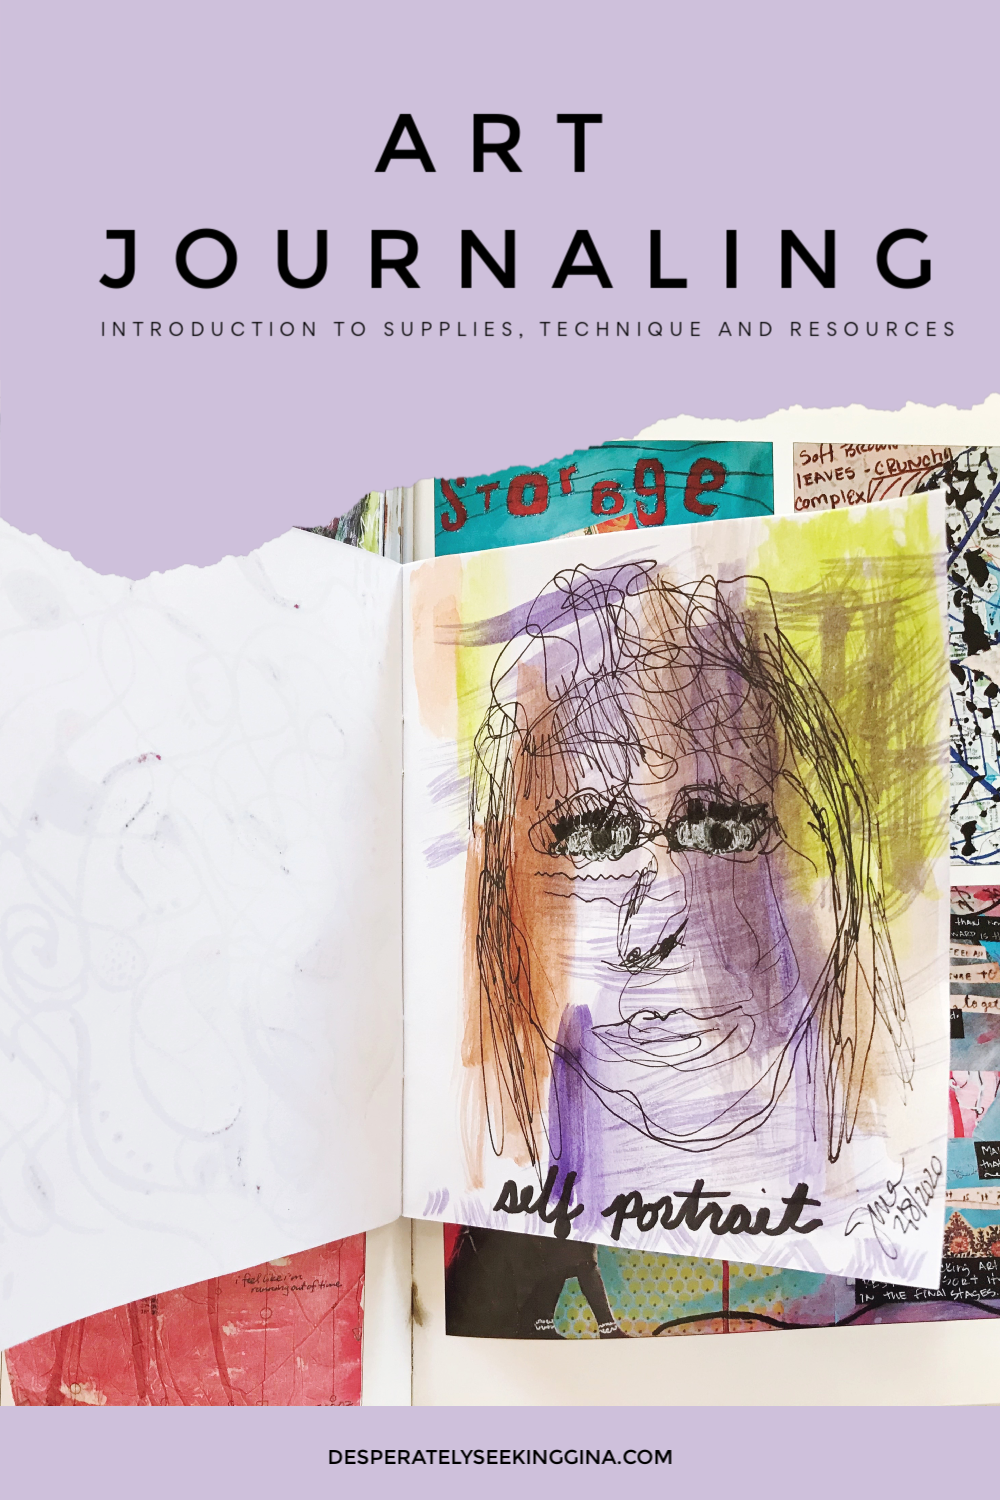 Introduction to Visual Art Journaling Workshop - Desperately Seeking Gina